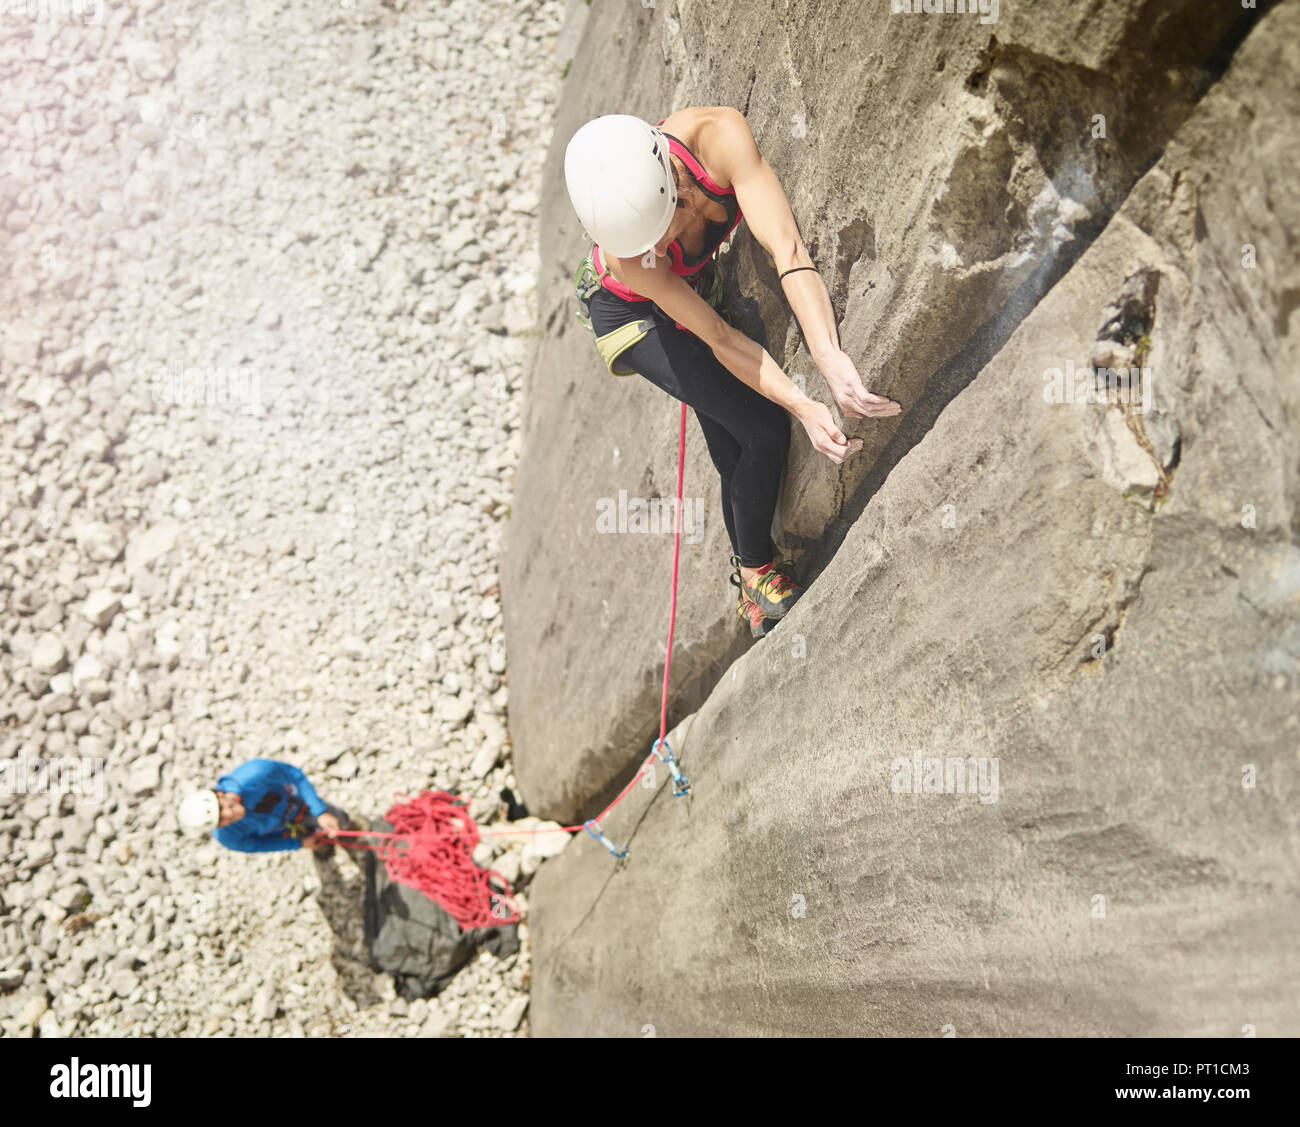 L'Autriche, Innsbruck, Martinswand, woman climbing dans Rock Wall Banque D'Images